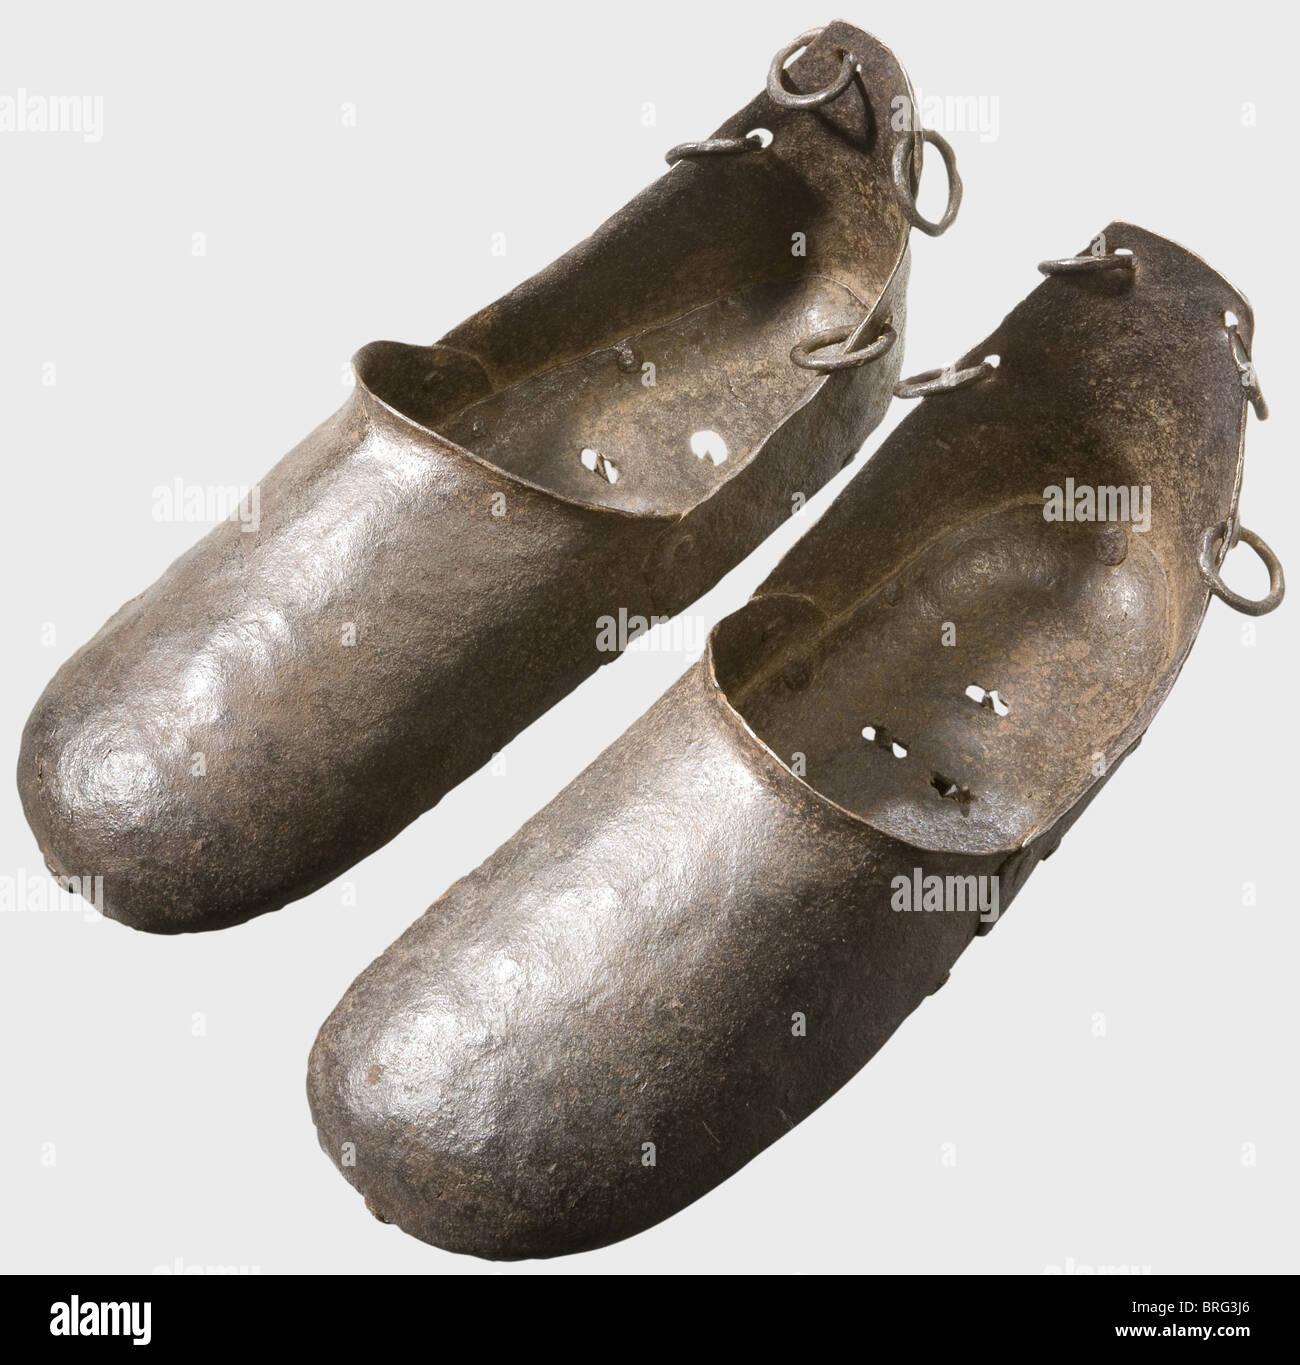 Une paire de chaussures de torture allemandes,XVIe/XVIIe siècle.fer forgé.surchaussures,faites de plusieurs morceaux de fer à feuilles riveté.chacun a quatre anneaux près du talon pour fixer la chaussure avec des laçages ou des sangles en cuir.les plaques inférieures de chacun ont trois trous avec des pointes à ressort.longueur de chaque 35 cm.les criminels ont été forcés à porter De telles chaussures pour augmenter leur souffrance.le délinquant a été forcé de se tenir sur le pied, comme autrement les pointes pénétreraient le fond de ses pieds, causant de graves douleurs.historique,historique, 17th siècle,16ème centur,Additional-Rights-Clearences-Not Available Banque D'Images